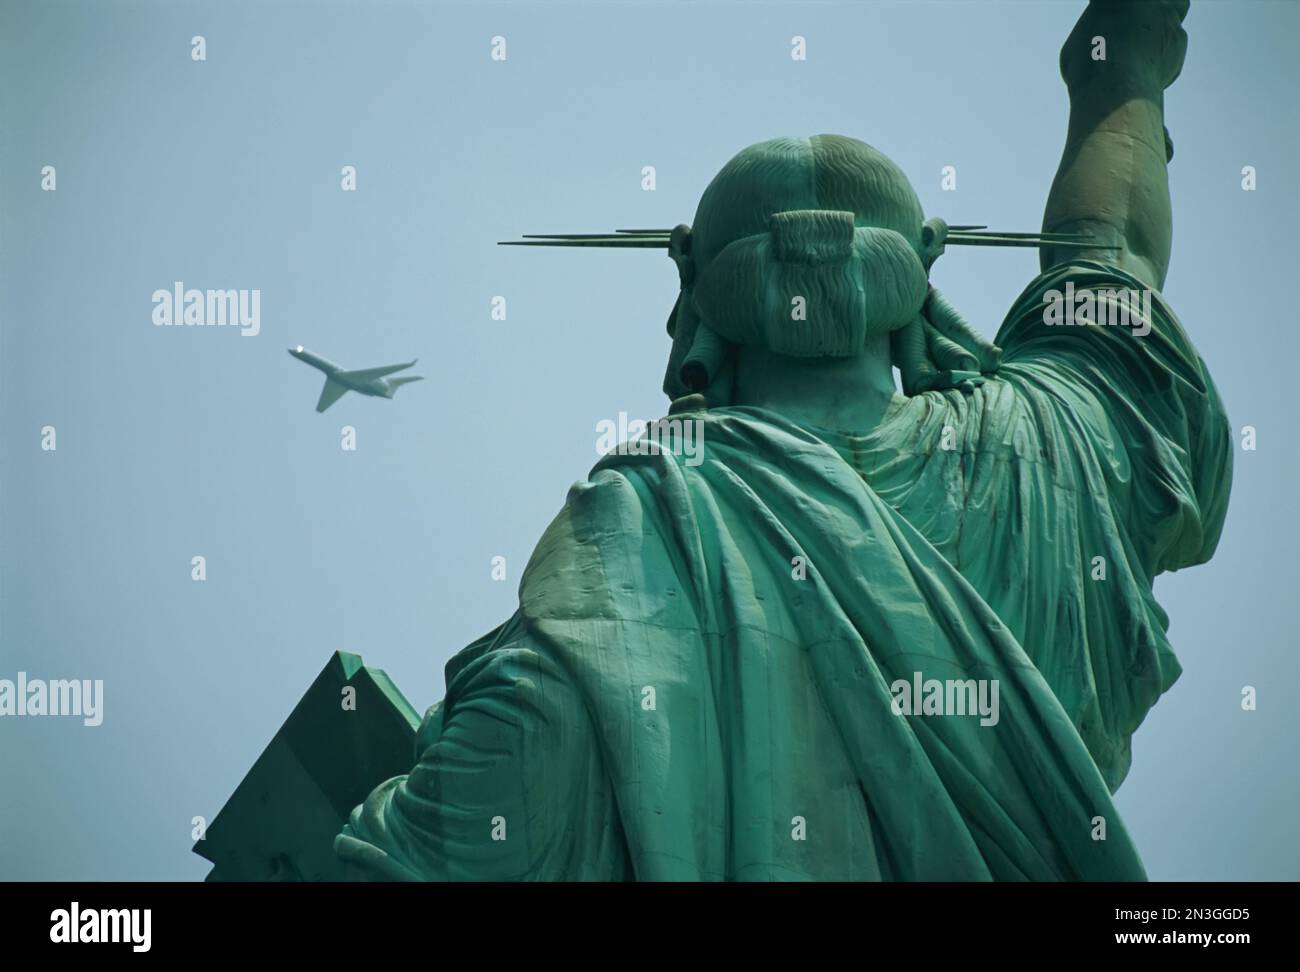 Un avion vole près de la Statue de la liberté dans un ciel bleu vif par une journée ensoleillée ; New York City, New York, États-Unis d'Amérique Banque D'Images